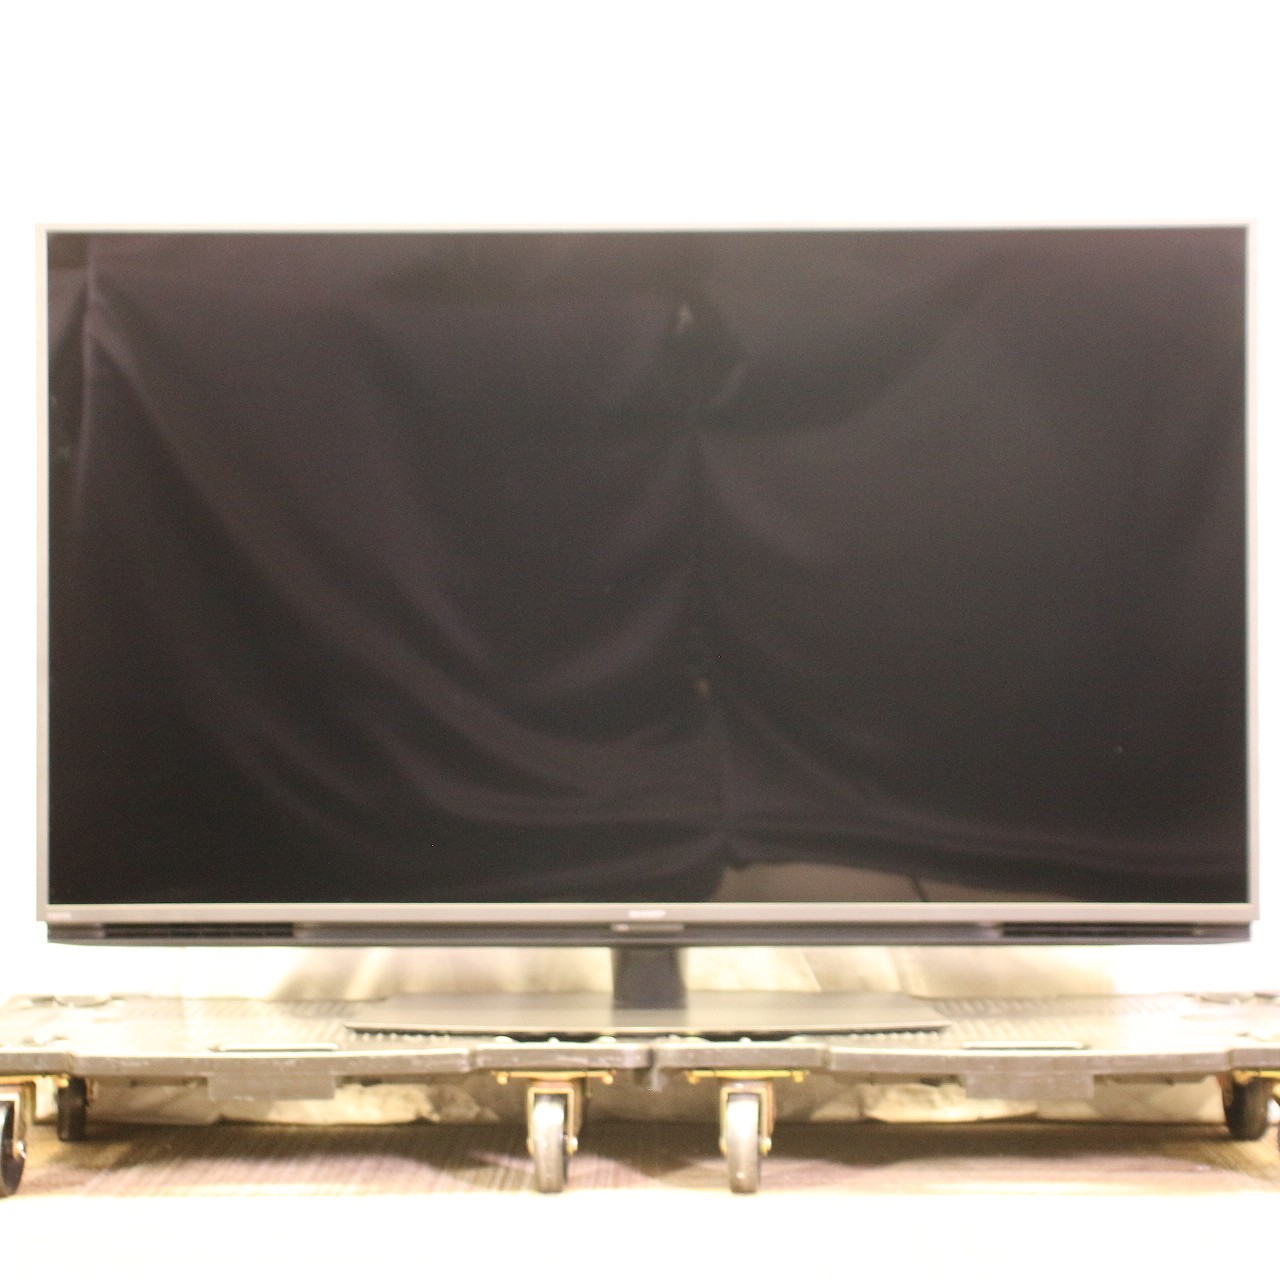 シャープ 4K対応 50V型液晶テレビ 無線LAN YouTube対応 - テレビ